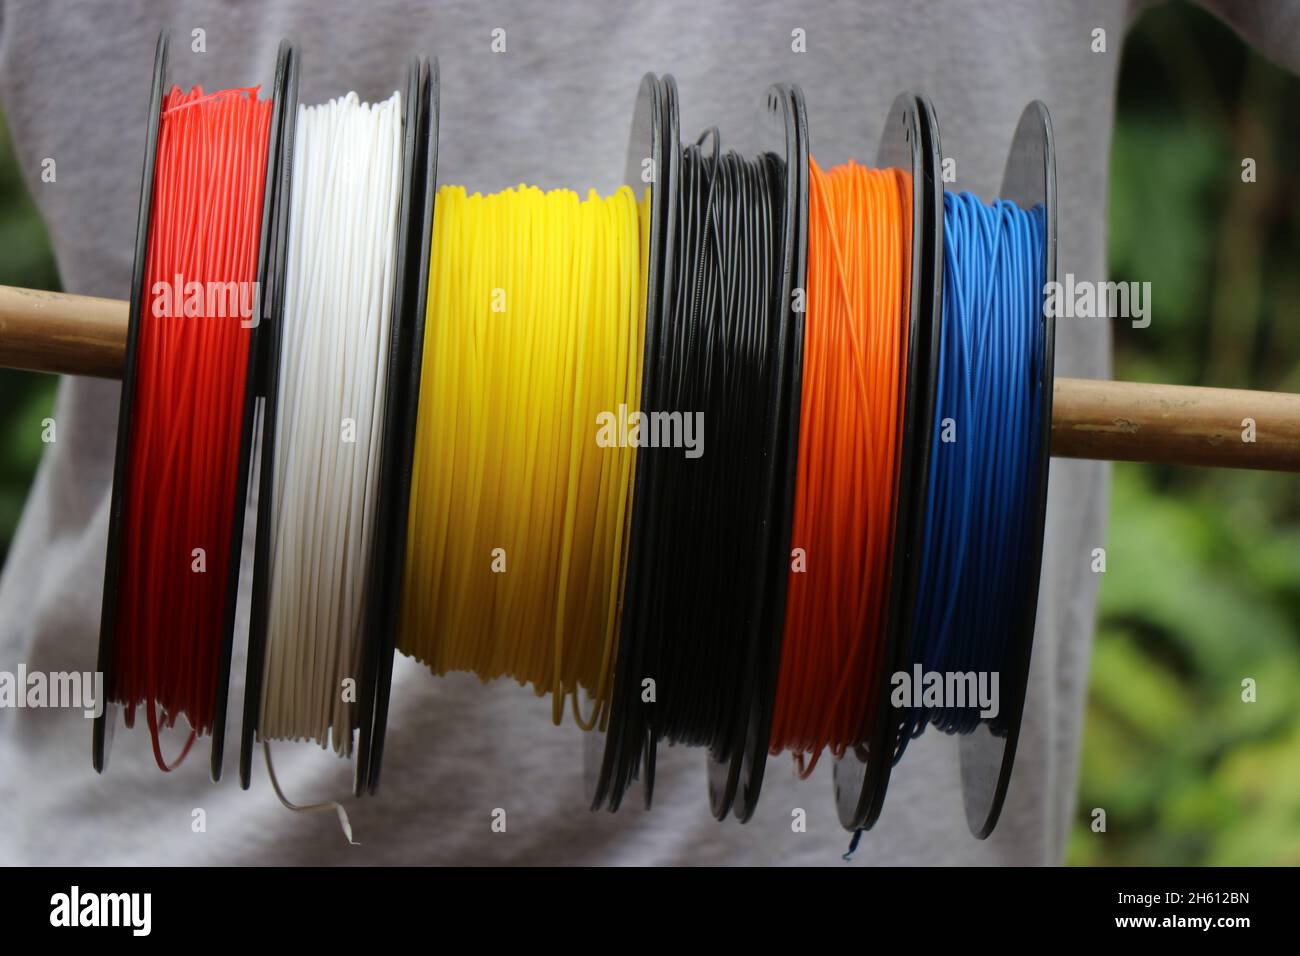 Bobine de filaments polylactiques ou PLA de différentes couleurs utilisés pour l'impression 3D Banque D'Images